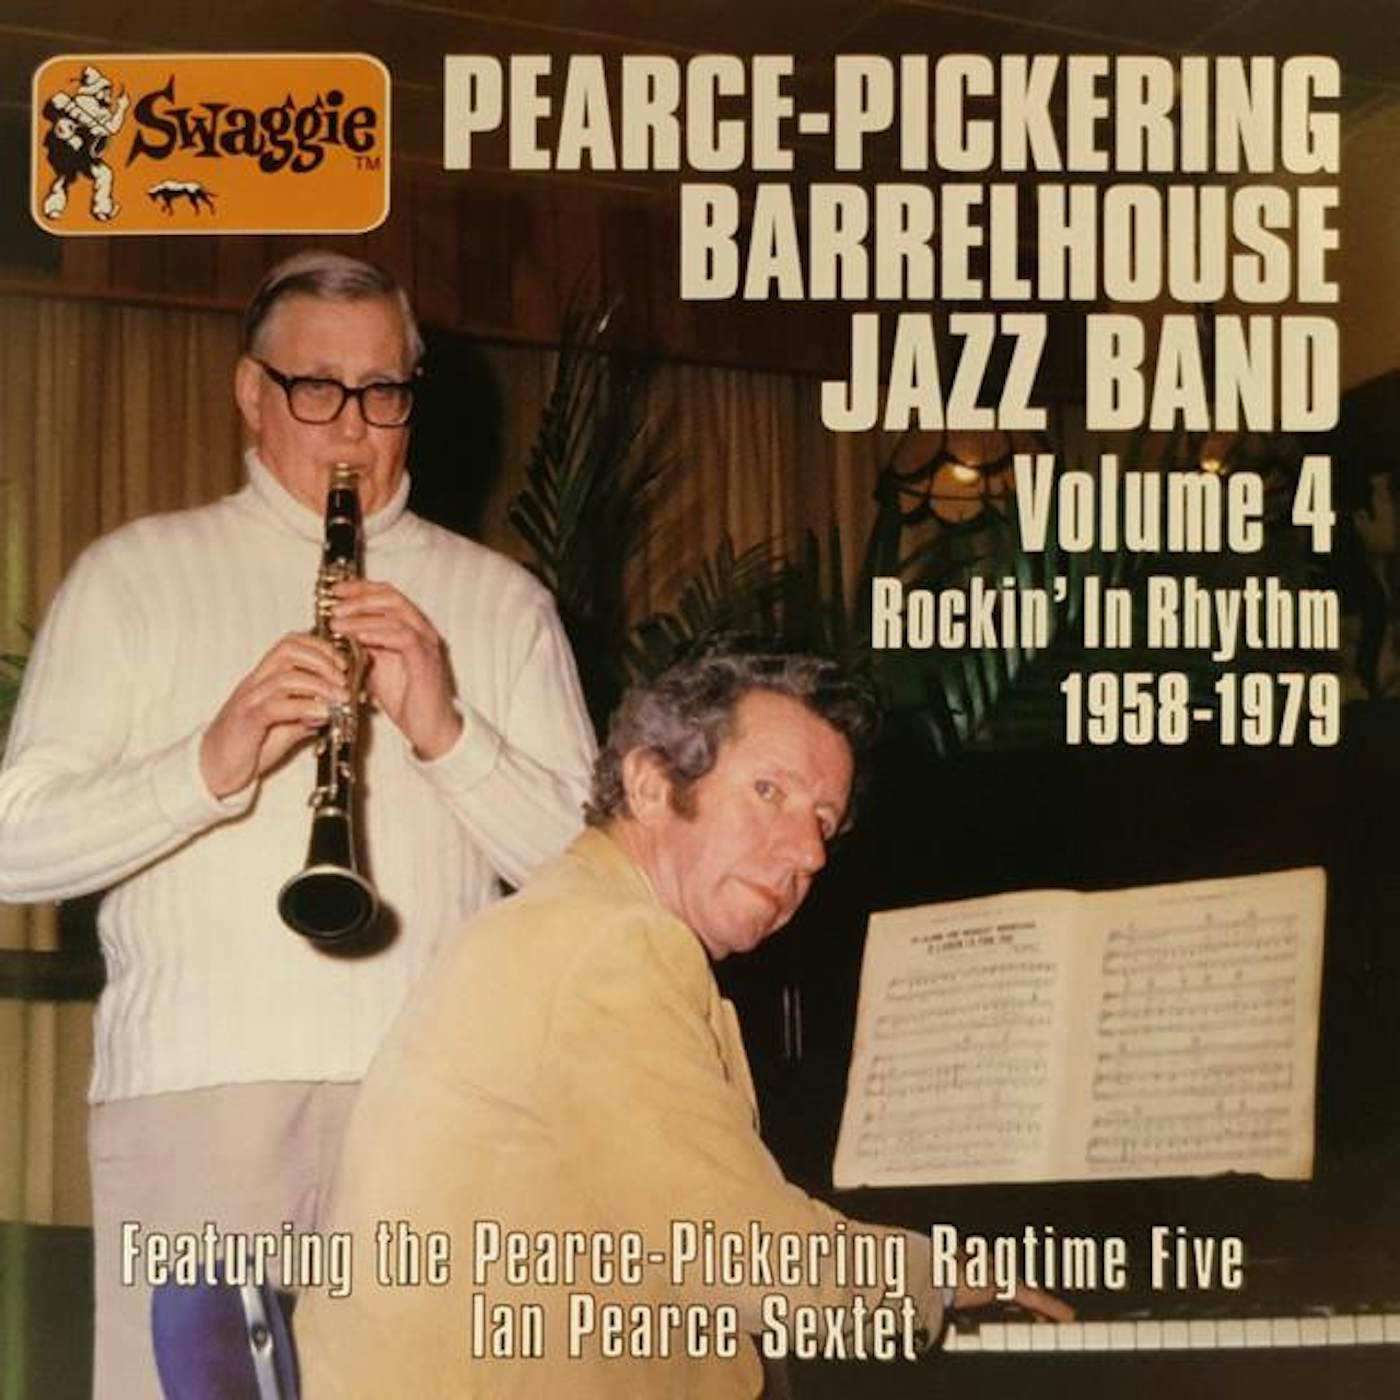 Pearce-Pickering Barrelhouse Jazz Band